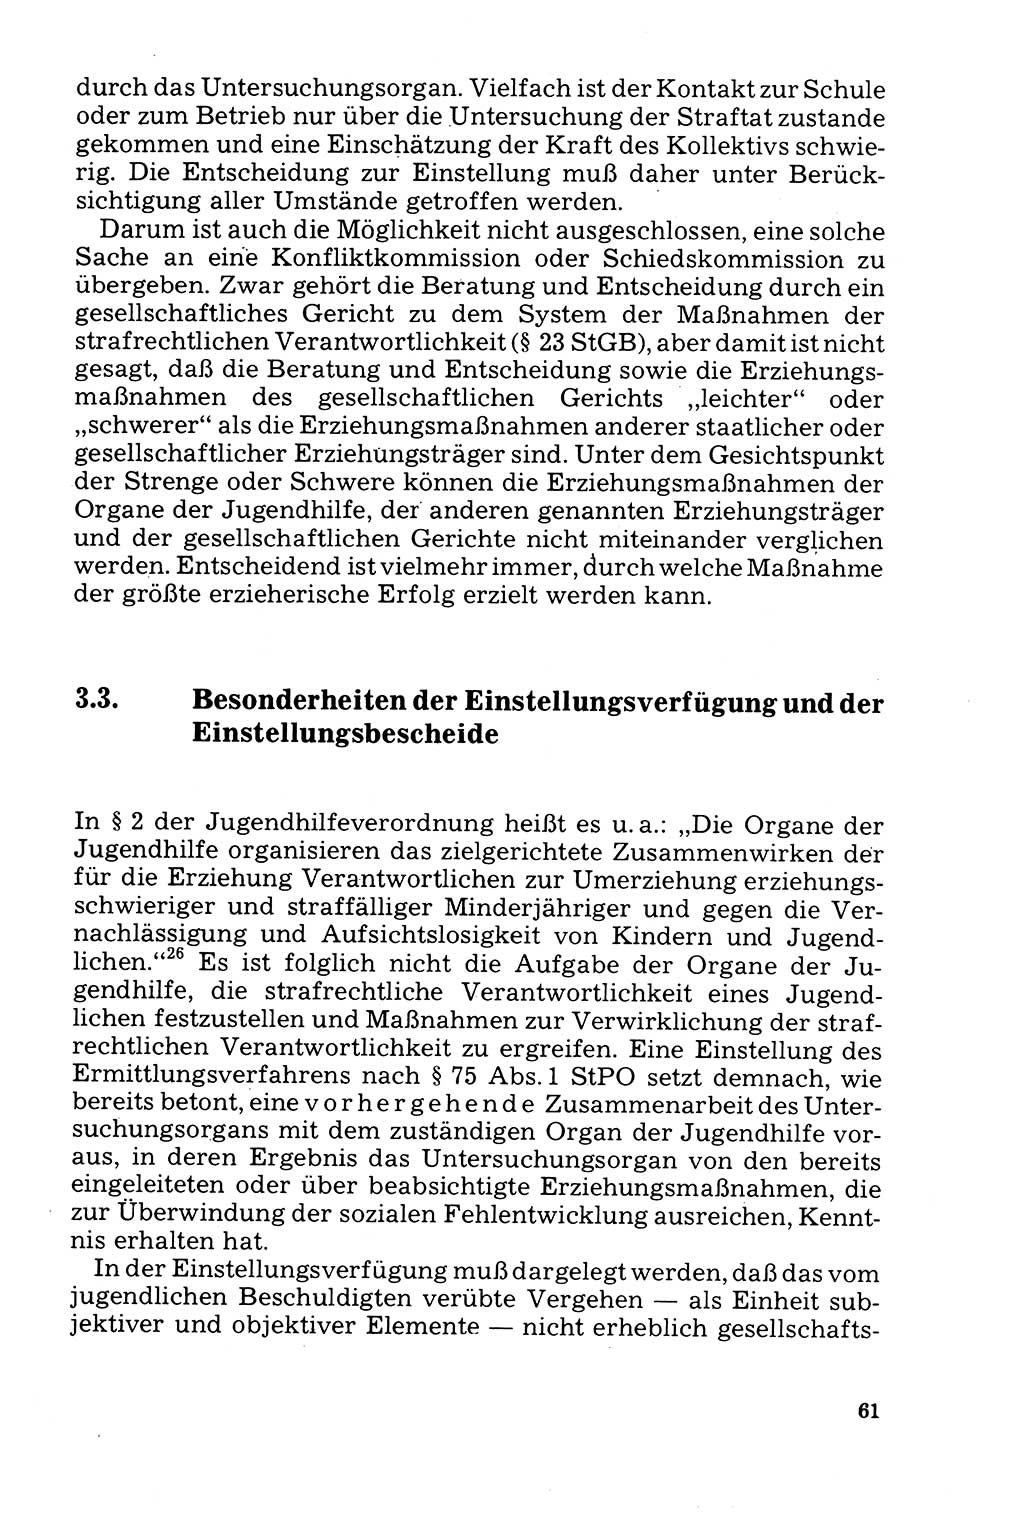 Der Abschluß des Ermittlungsverfahrens [Deutsche Demokratische Republik (DDR)] 1978, Seite 61 (Abschl. EV DDR 1978, S. 61)